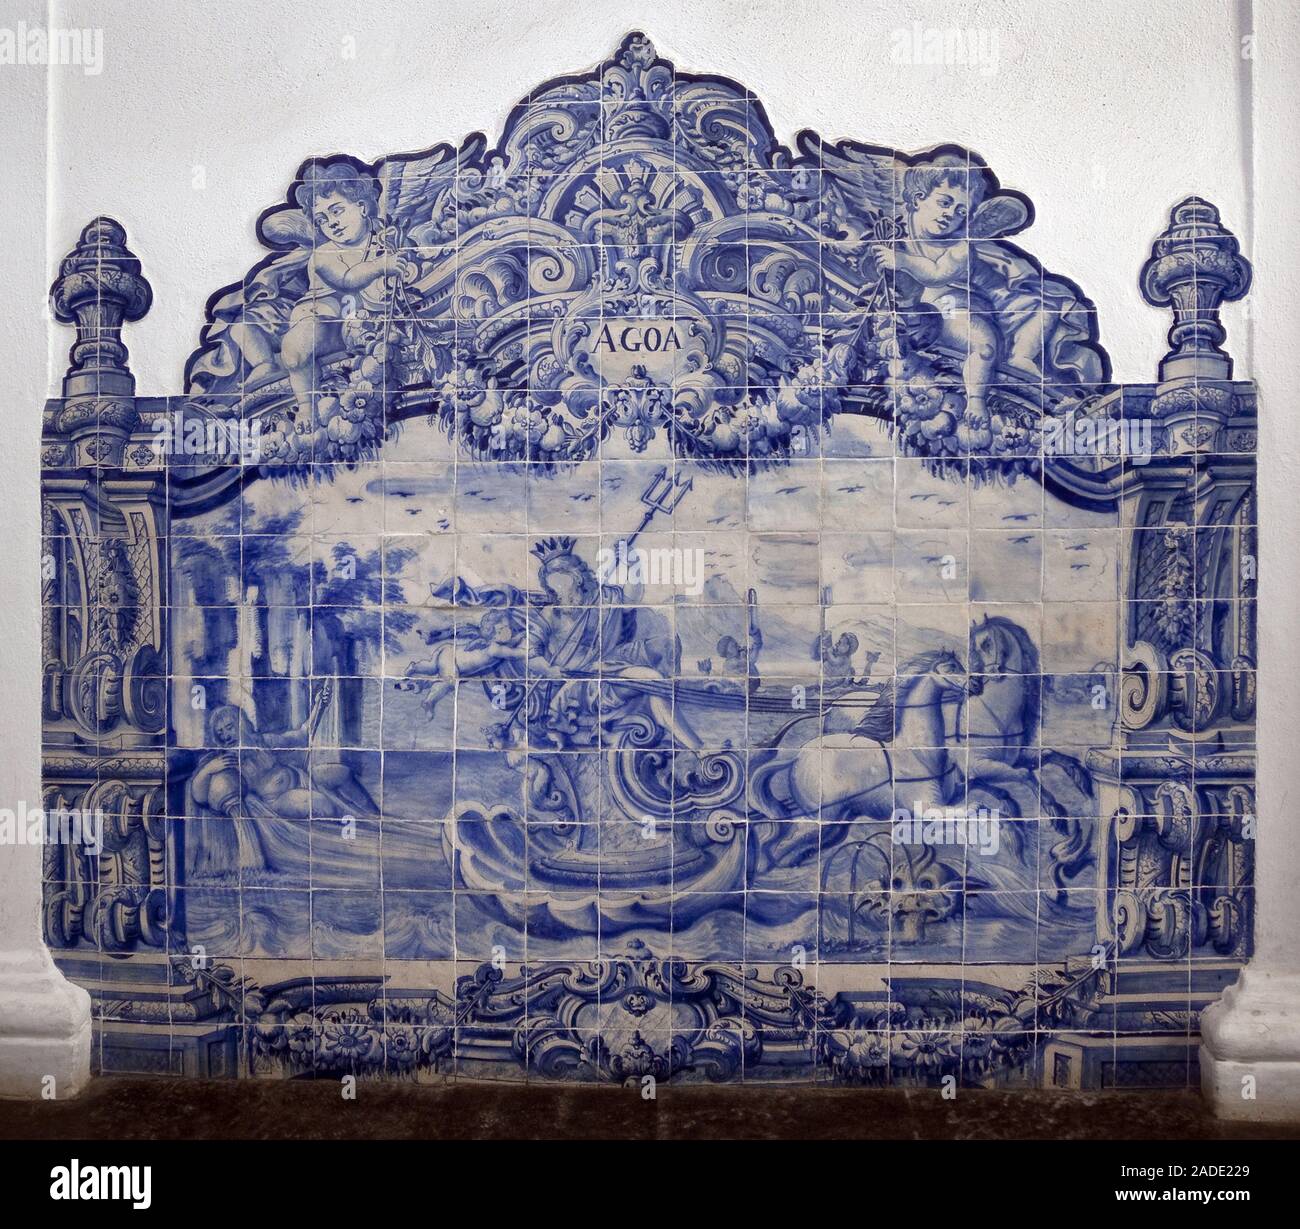 Allegorie de l'eau - Azulejos, faience peinte, 18e siecle (Water, azulejos 18th century) - Universite d'Evora, Portugal - Stock Photo